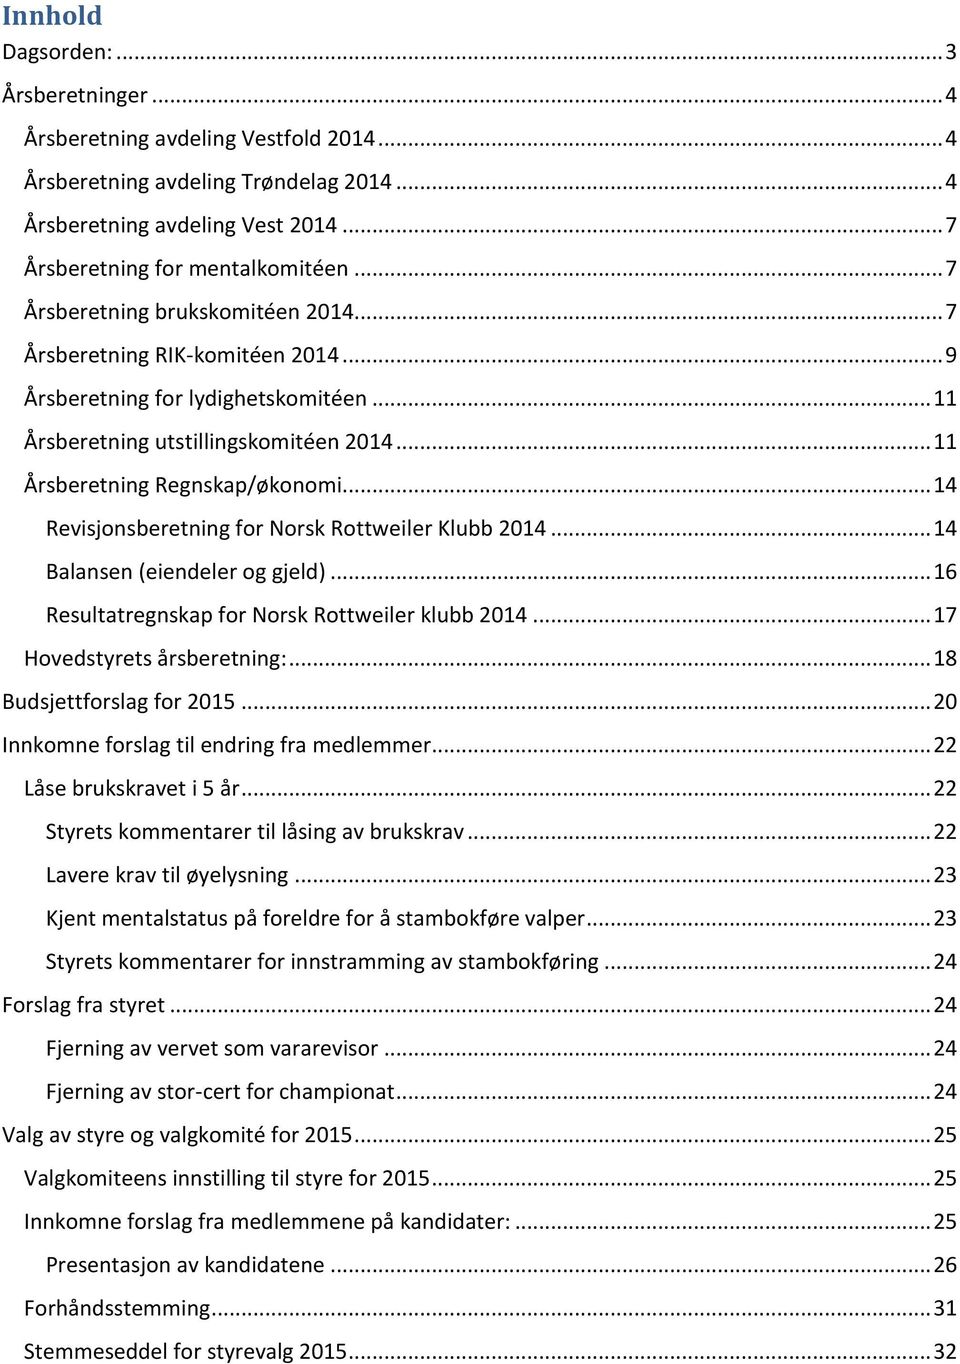 .. 14 Revisjonsberetning for Norsk Rottweiler Klubb 2014... 14 Balansen (eiendeler og gjeld)... 16 Resultatregnskap for Norsk Rottweiler klubb 2014... 17 Hovedstyrets årsberetning:.